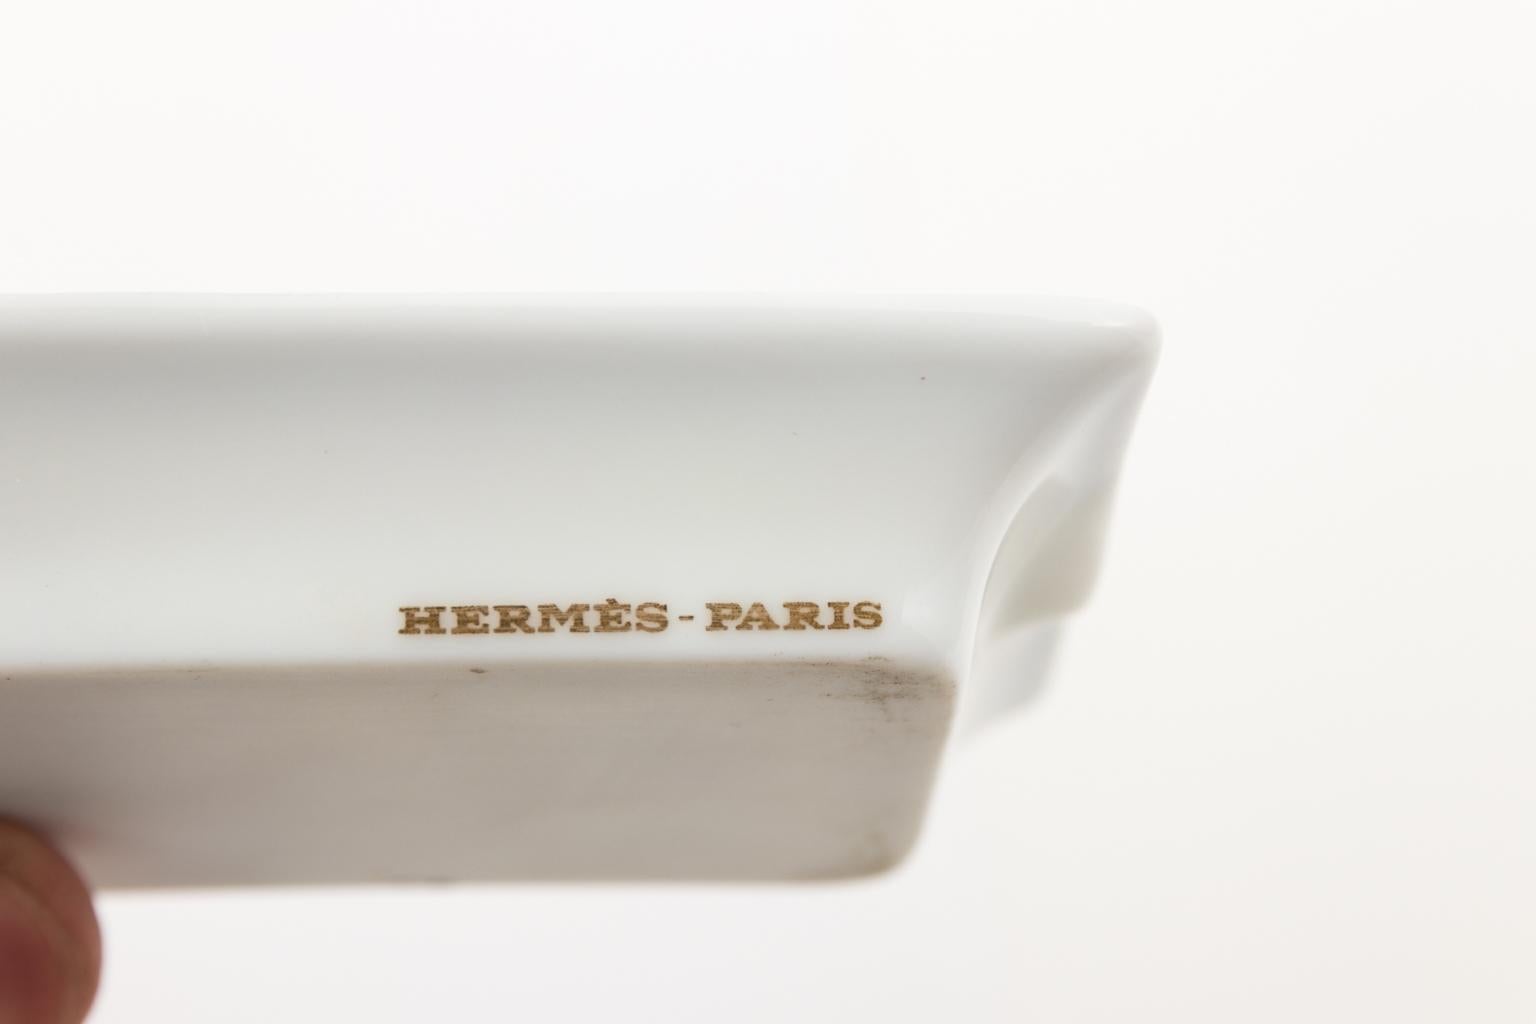 Painted Hermès-Paris Jaguar Ash Trays